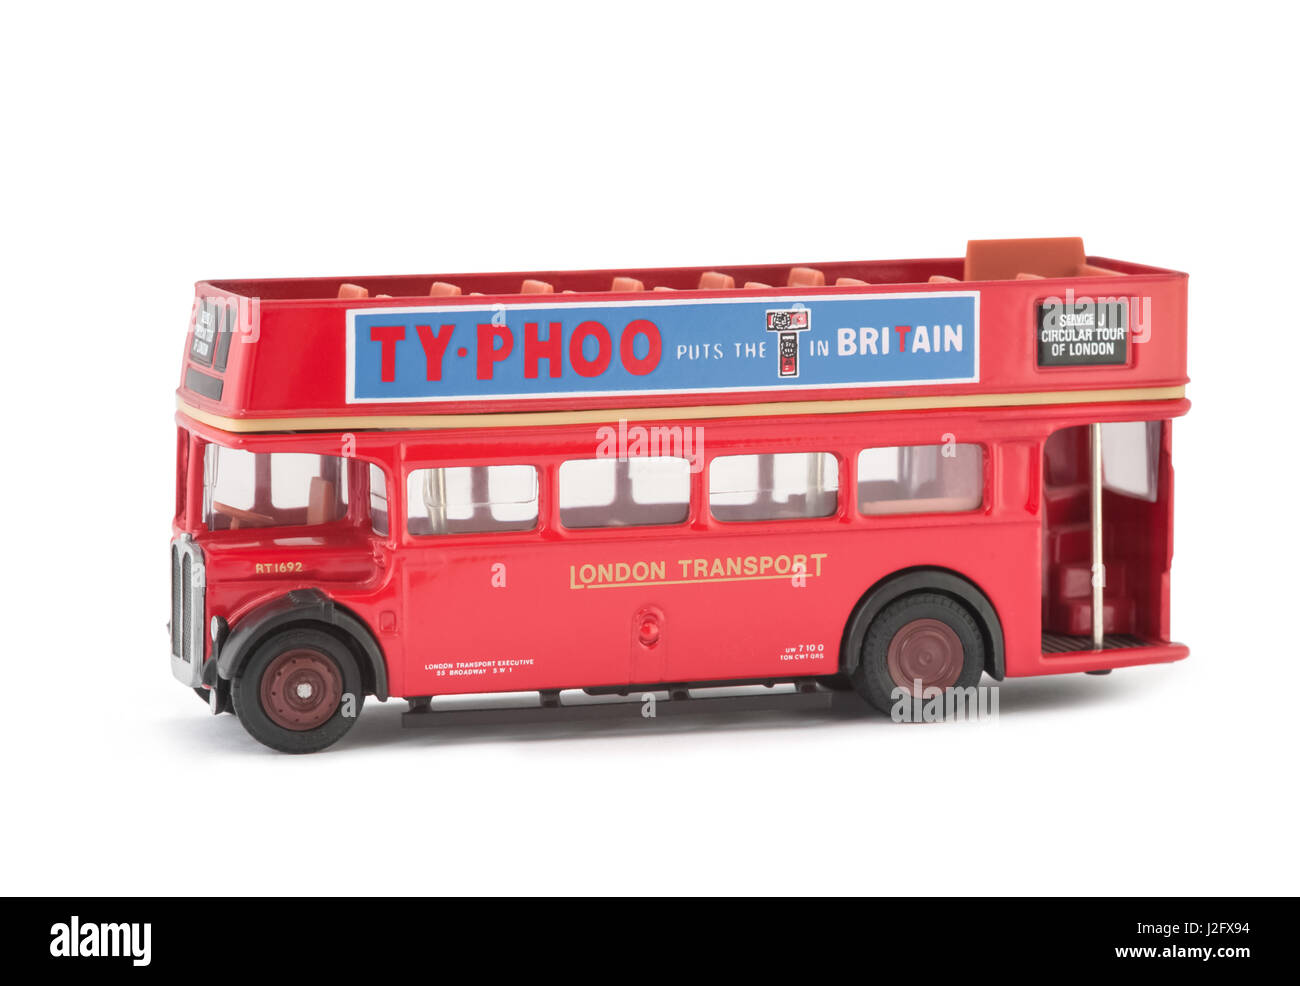 Miniaturmodell eines Jahrgangs London City Tour öffnen Top Sightseeing-Bus. Das original in volle Größe wurde für Tourismus-Ausflüge in die britische Hauptstadt verwendet. Stockfoto